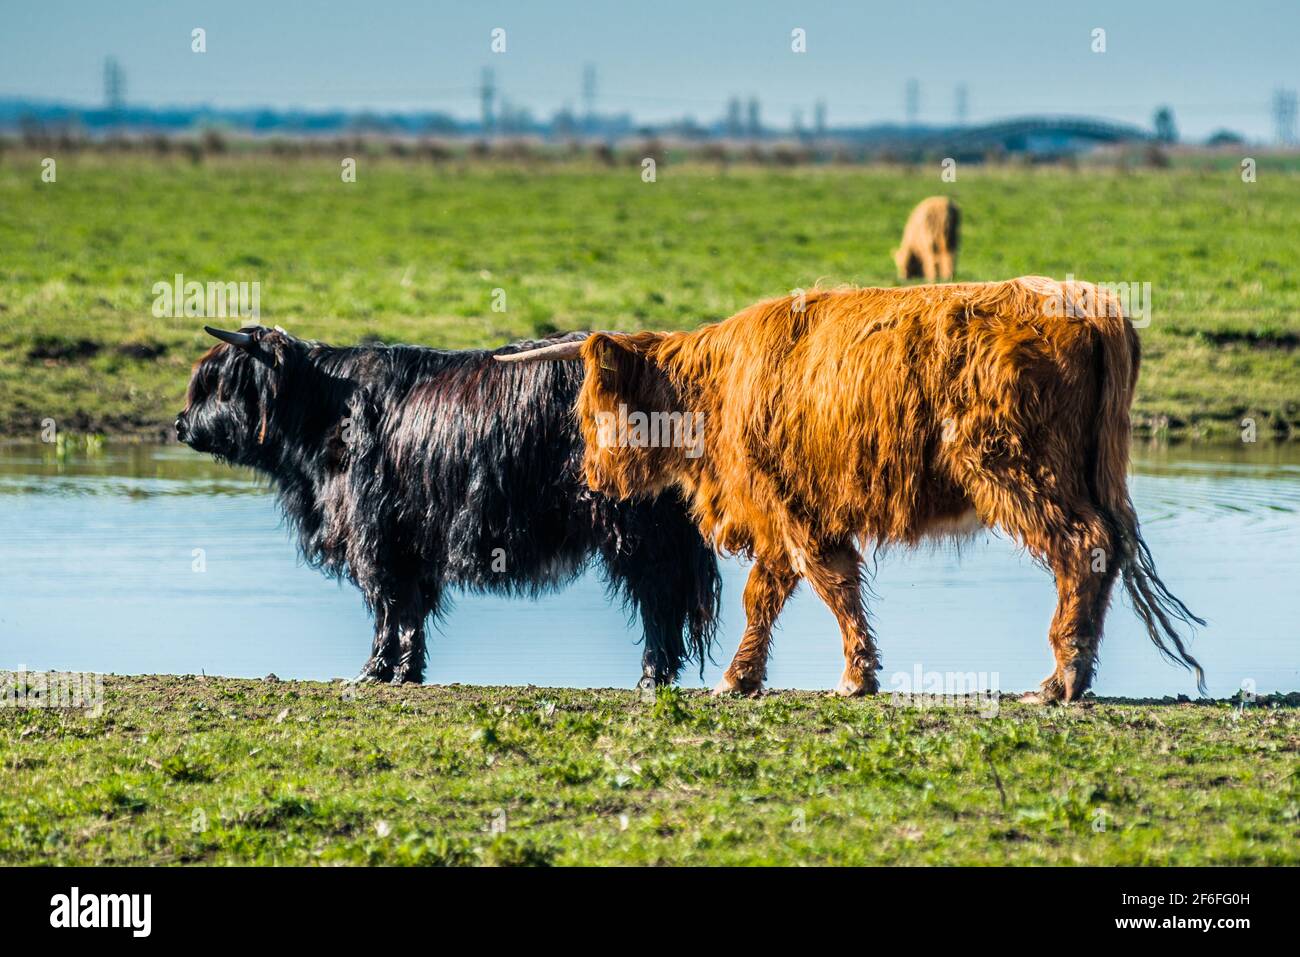 Highland cattle grazing on Wicken Fen Réserve Naturelle dans le Cambridgeshire, East Anglia, Angleterre, Royaume-Uni. Banque D'Images